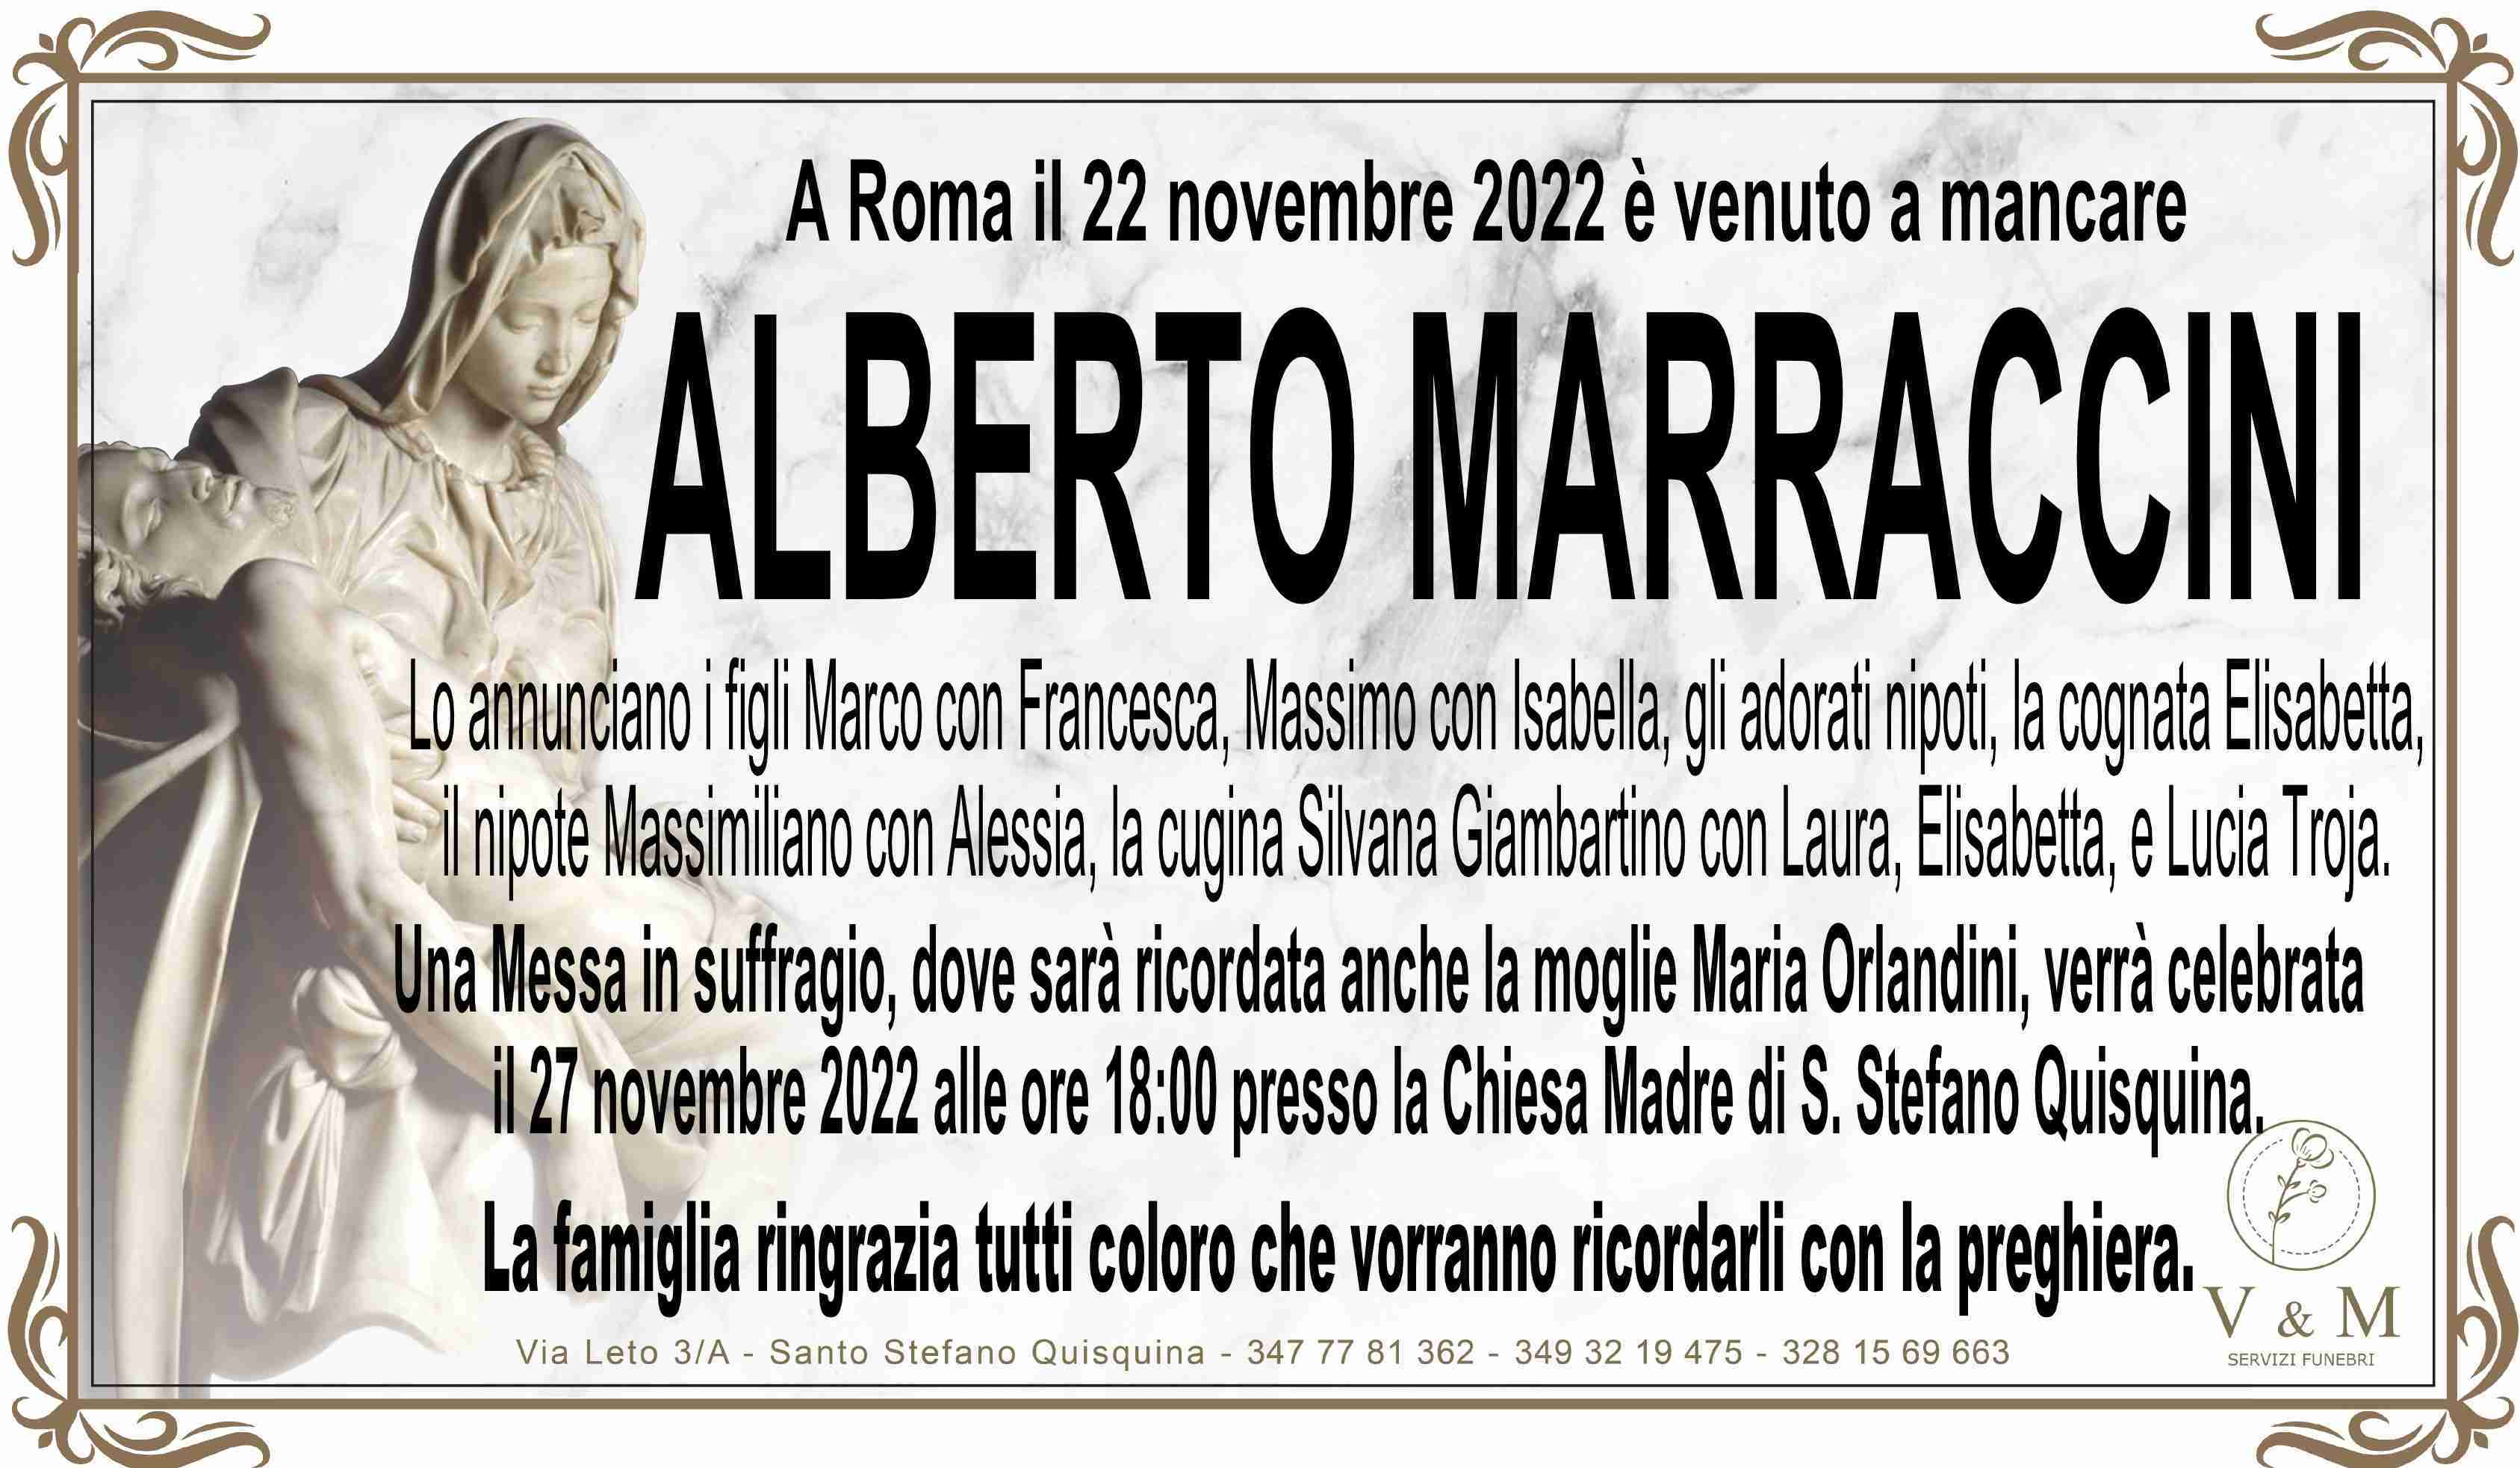 Alberto Marraccini